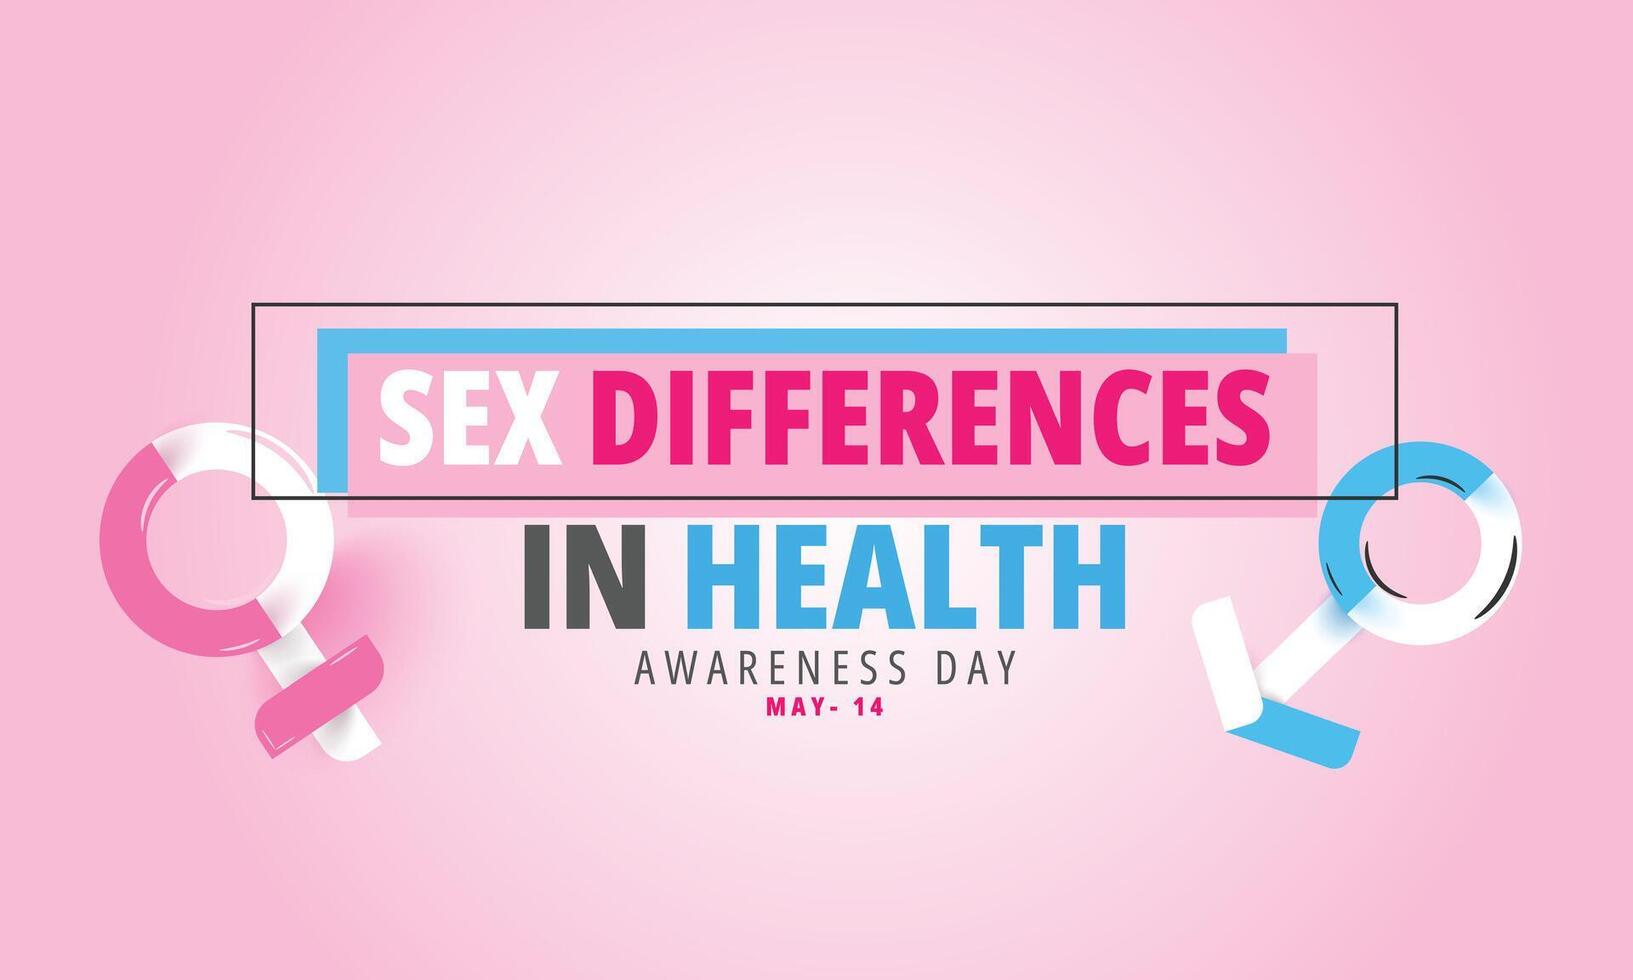 seks verschillen in Gezondheid bewustzijn dag. achtergrond, banier, kaart, poster, sjabloon. vector illustratie.